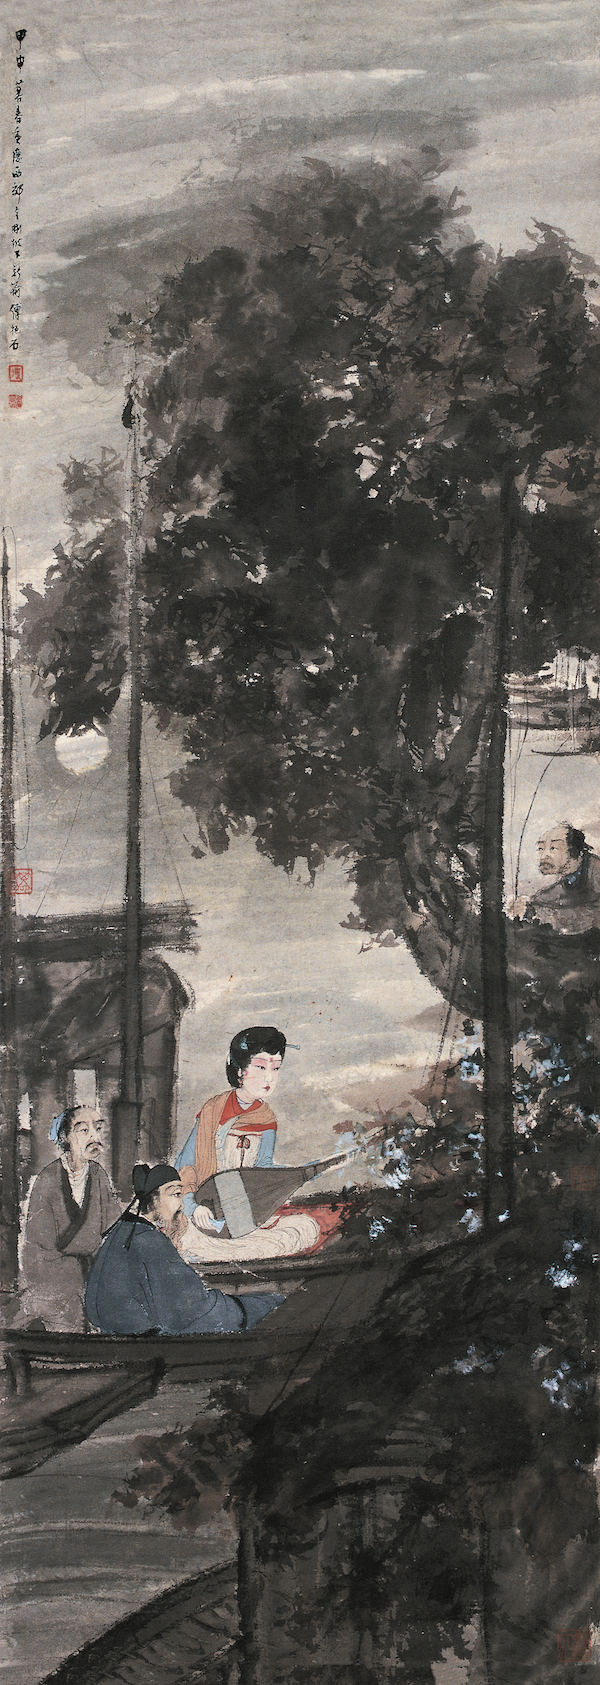 傅抱石《 琵琶行》 轴 纸本 设色 1944年 南京博物院藏